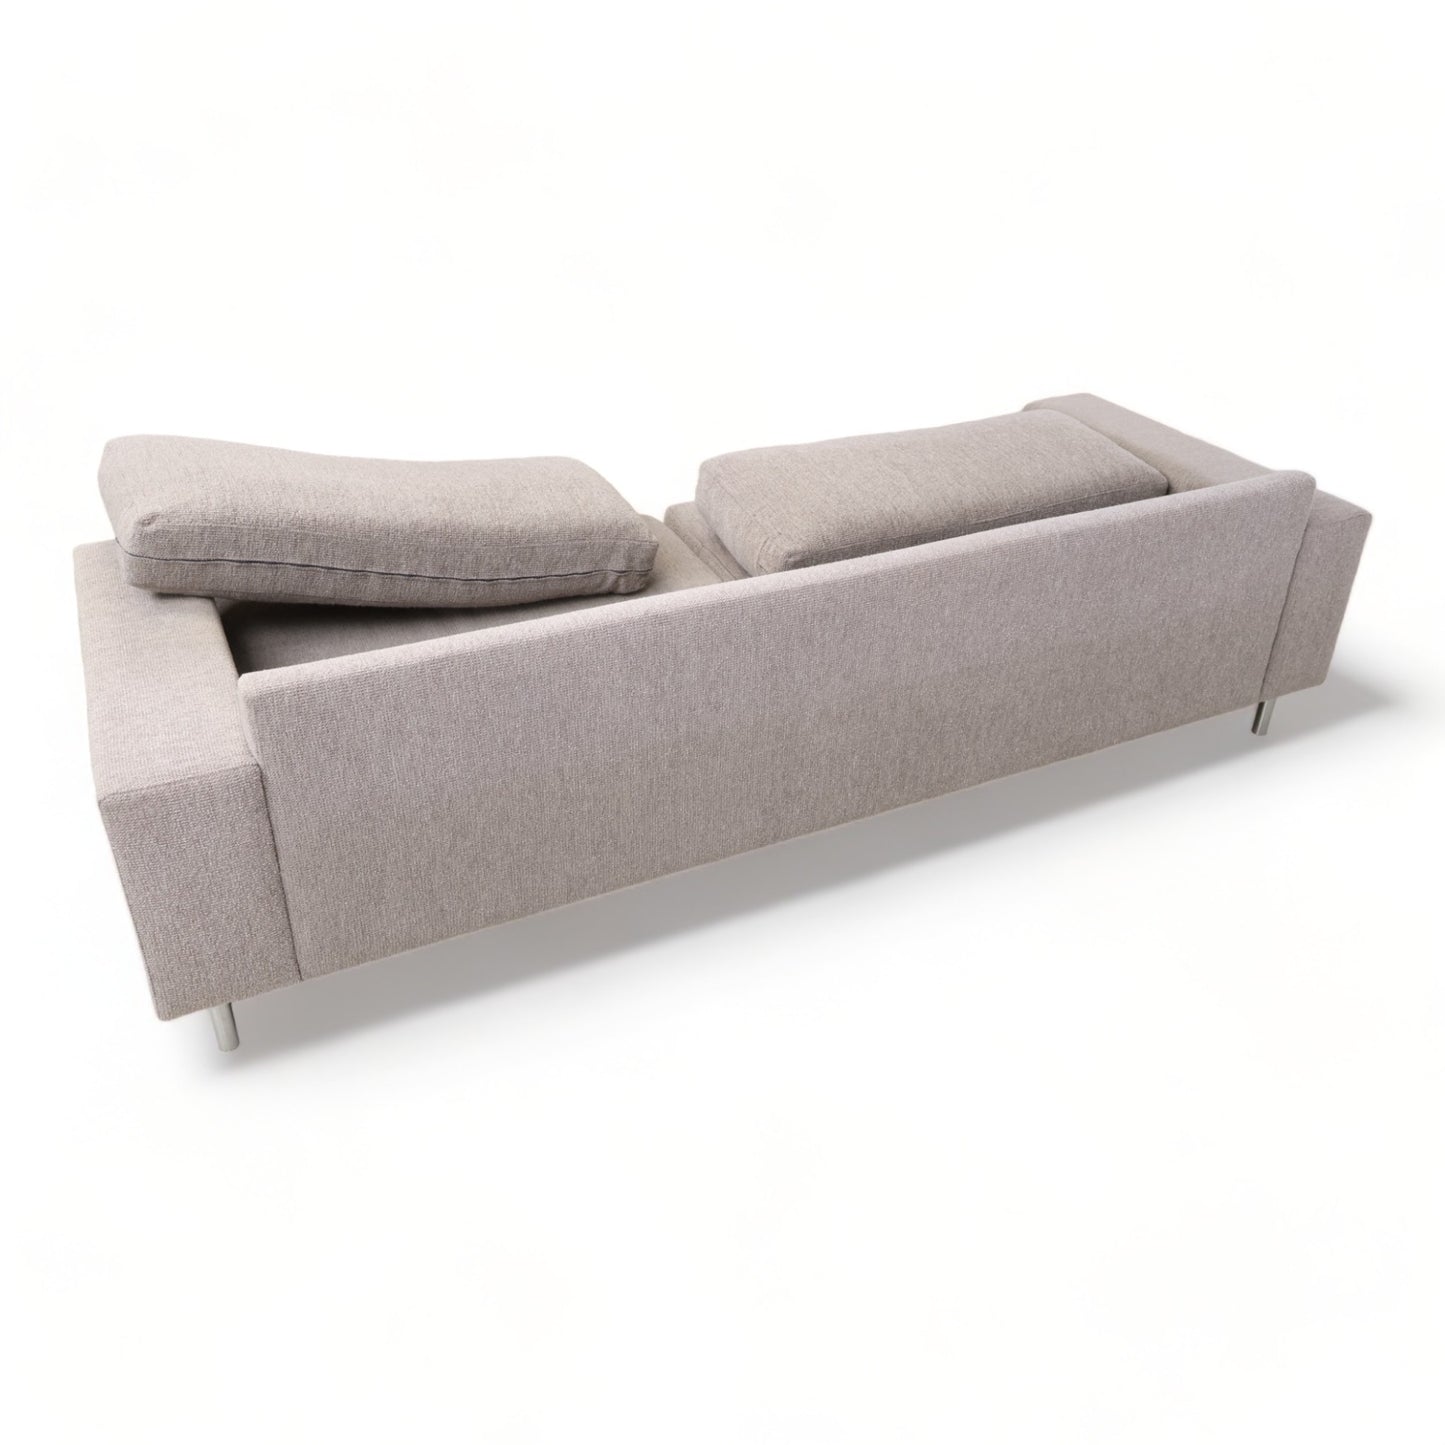 Nyrenset | Lys brun/grå 3-seter sofa